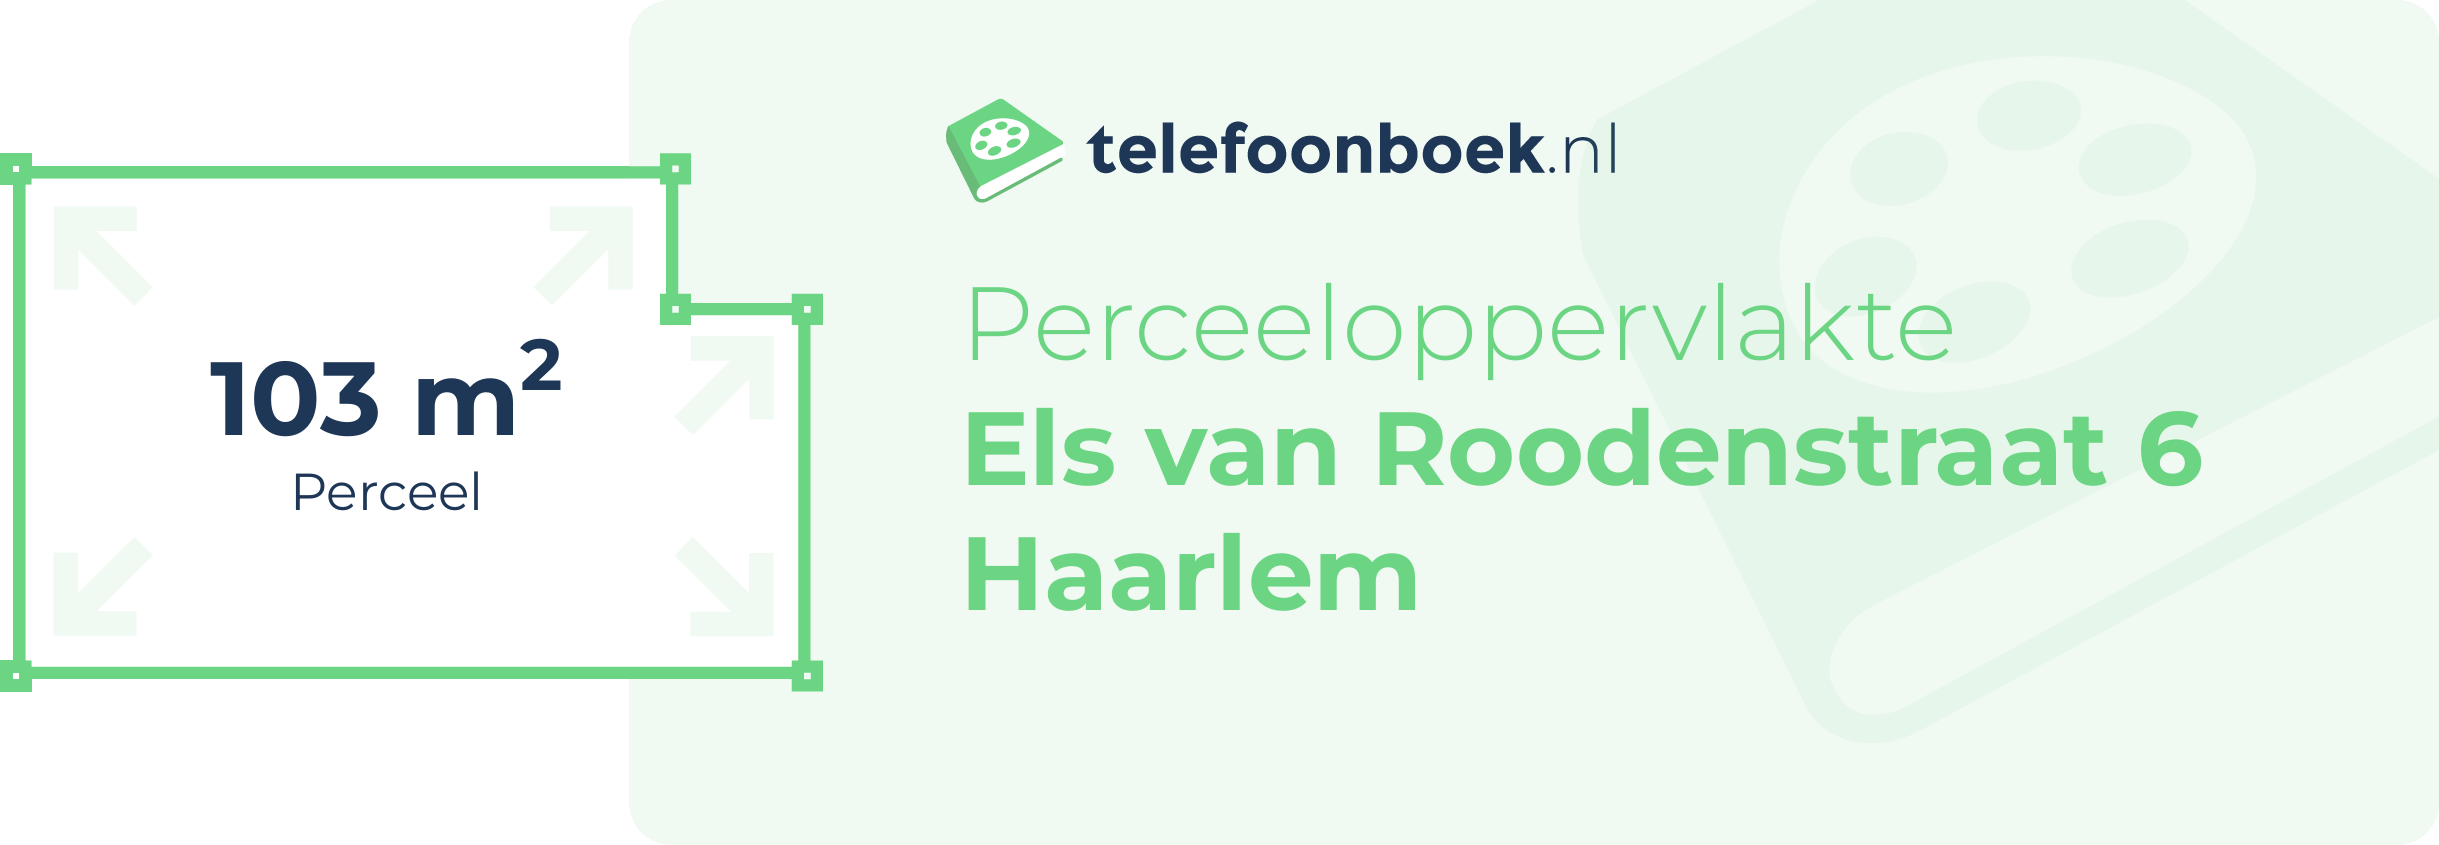 Perceeloppervlakte Els Van Roodenstraat 6 Haarlem